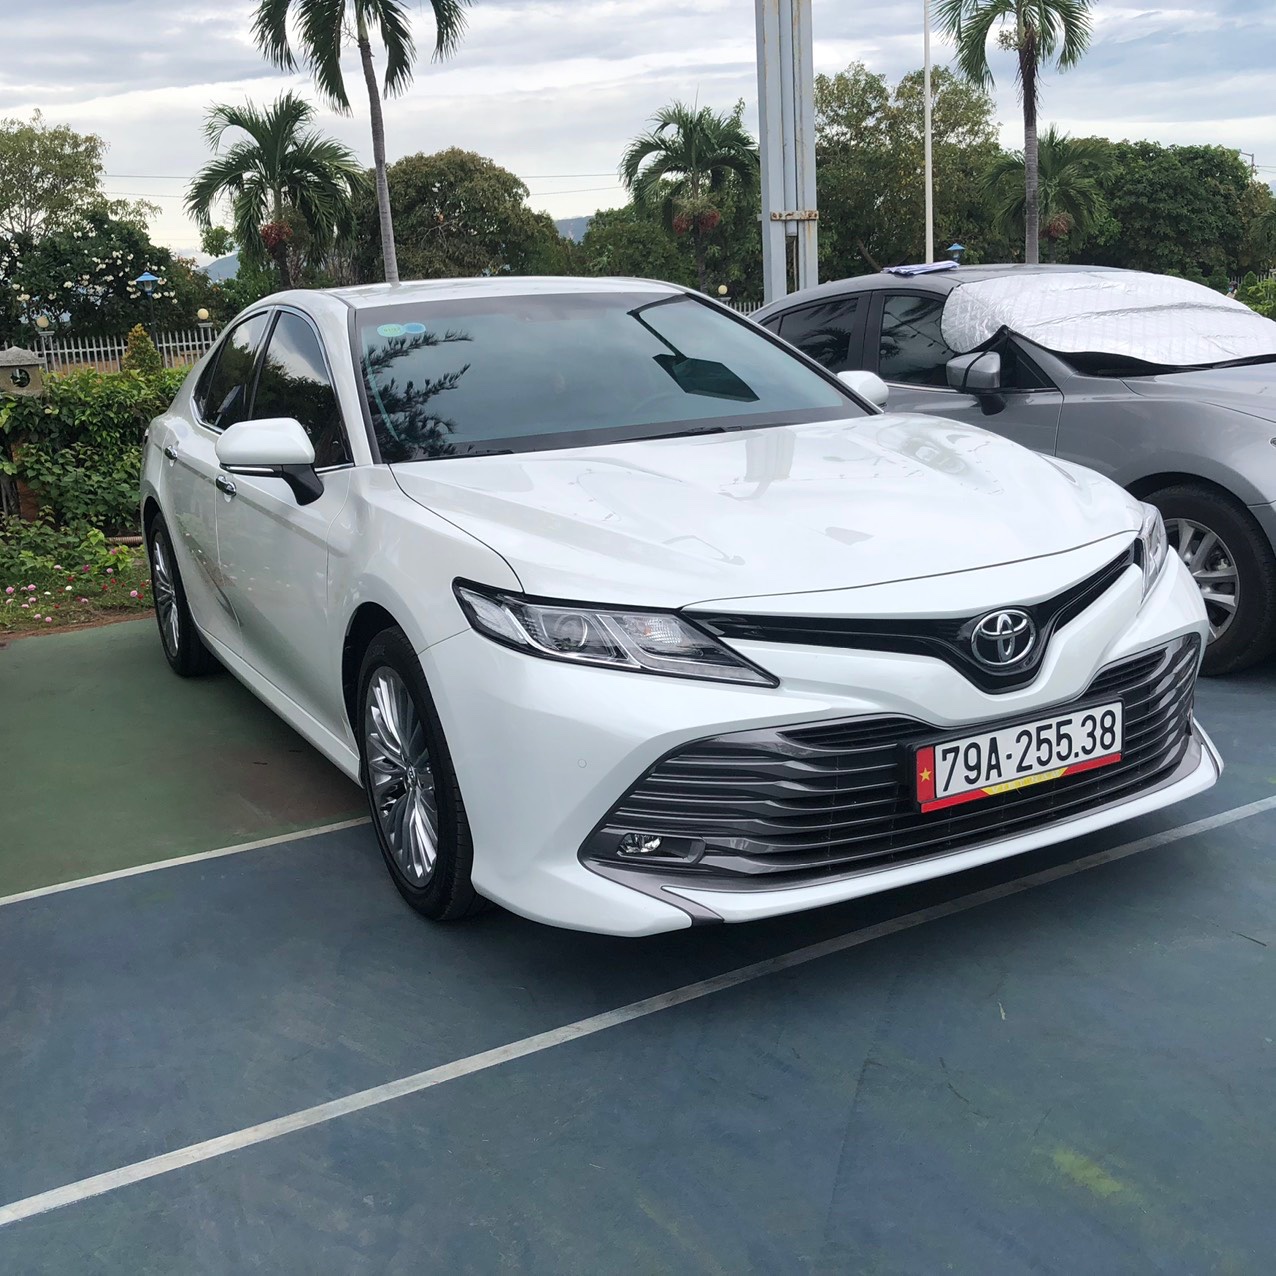 Bình ắc quy xe ô tô Toyota Camry 2019 đến nay  Ắc Quy Sài Gòn 